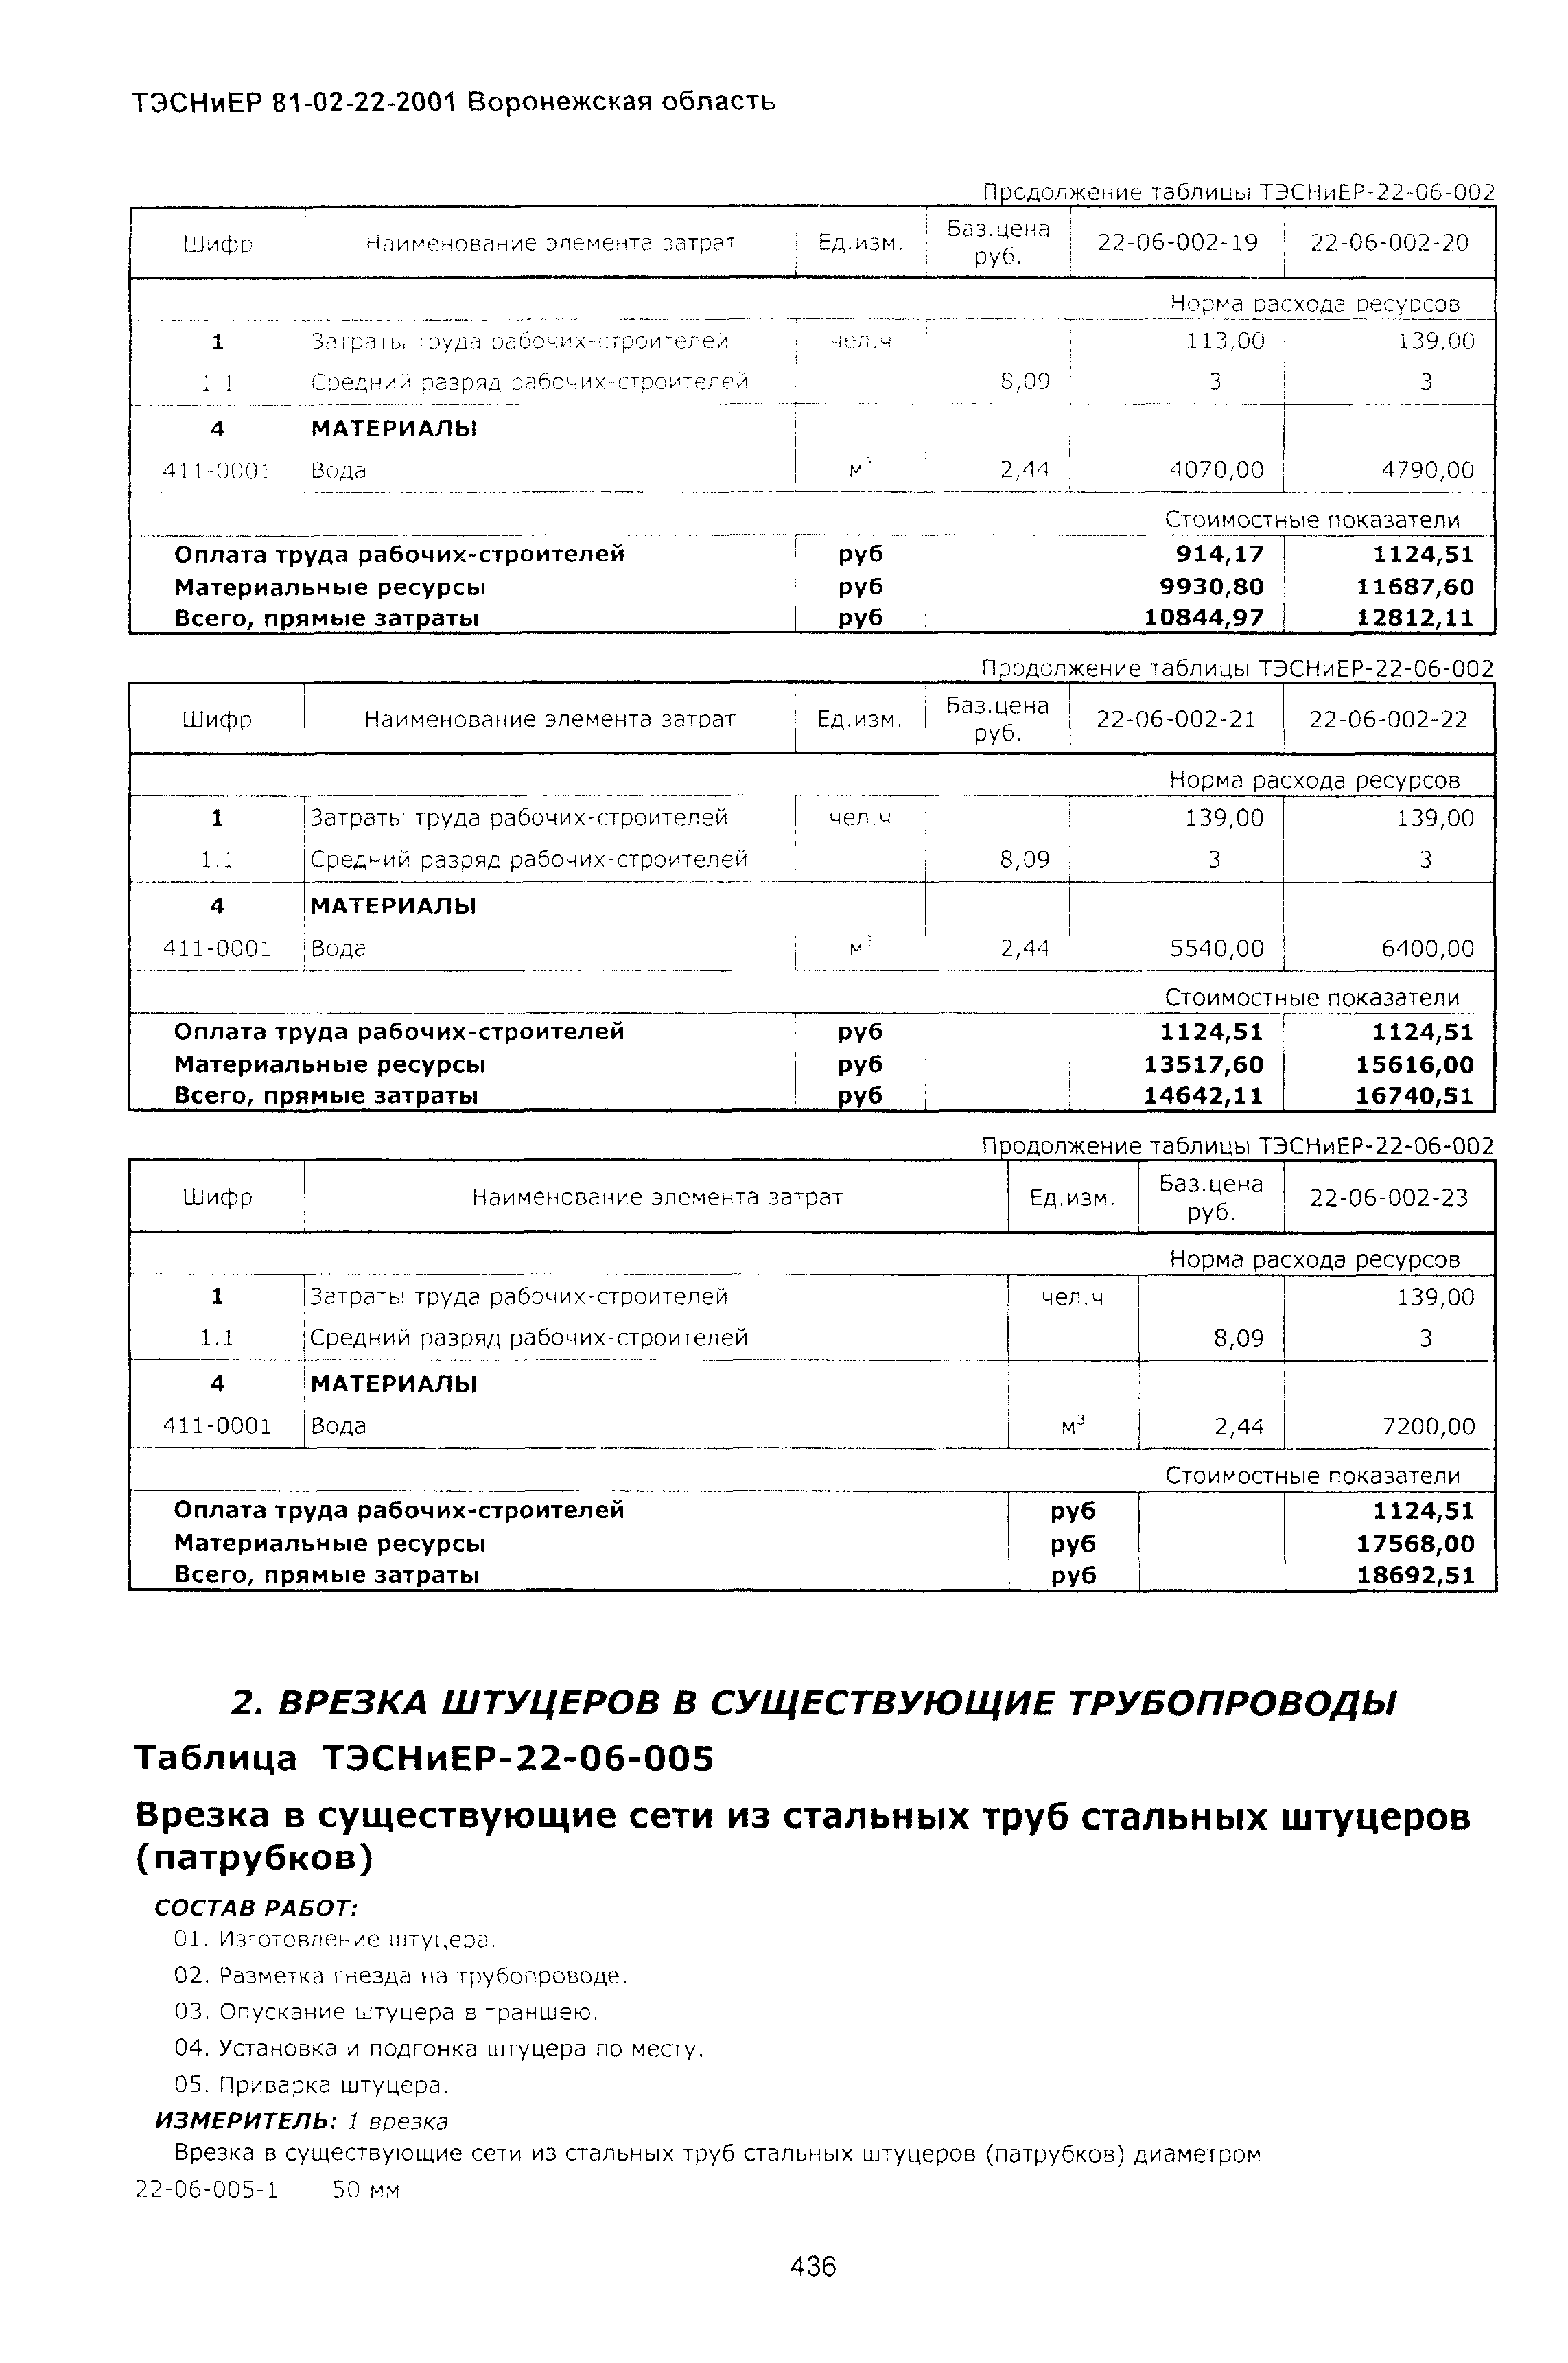 ТЭСНиЕР Воронежской области 81-02-22-2001